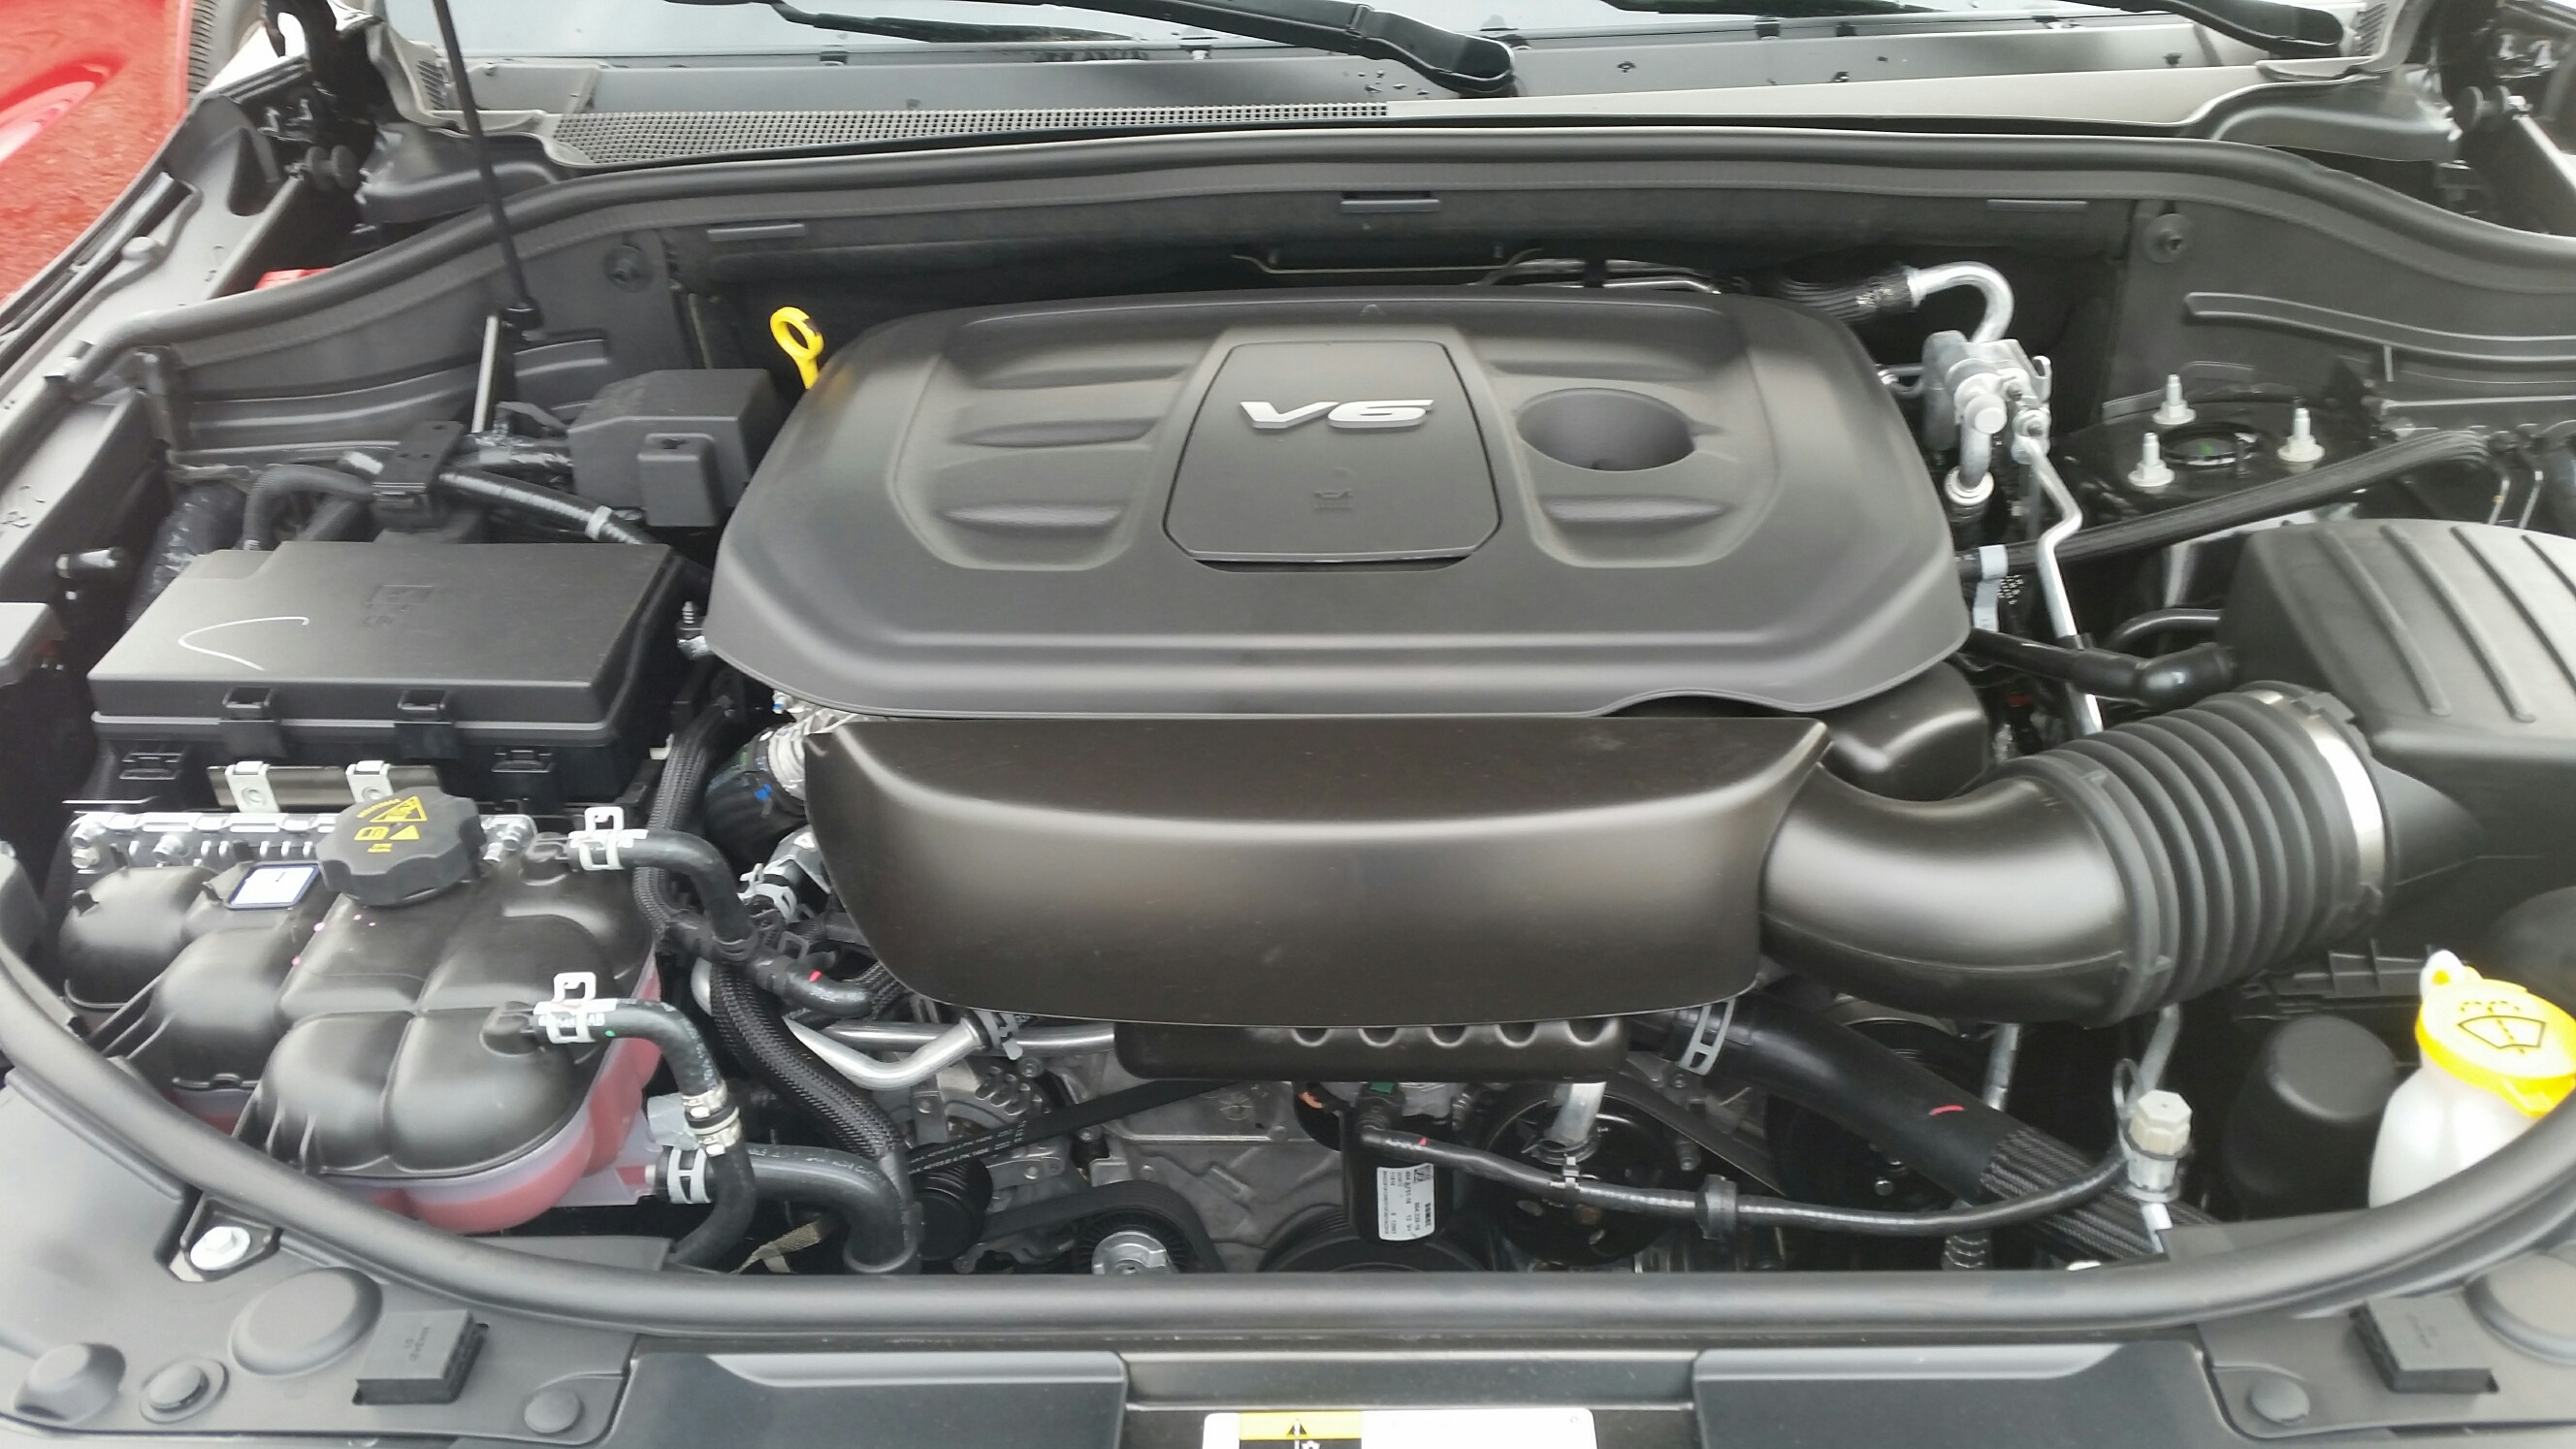 Durango v6 engine